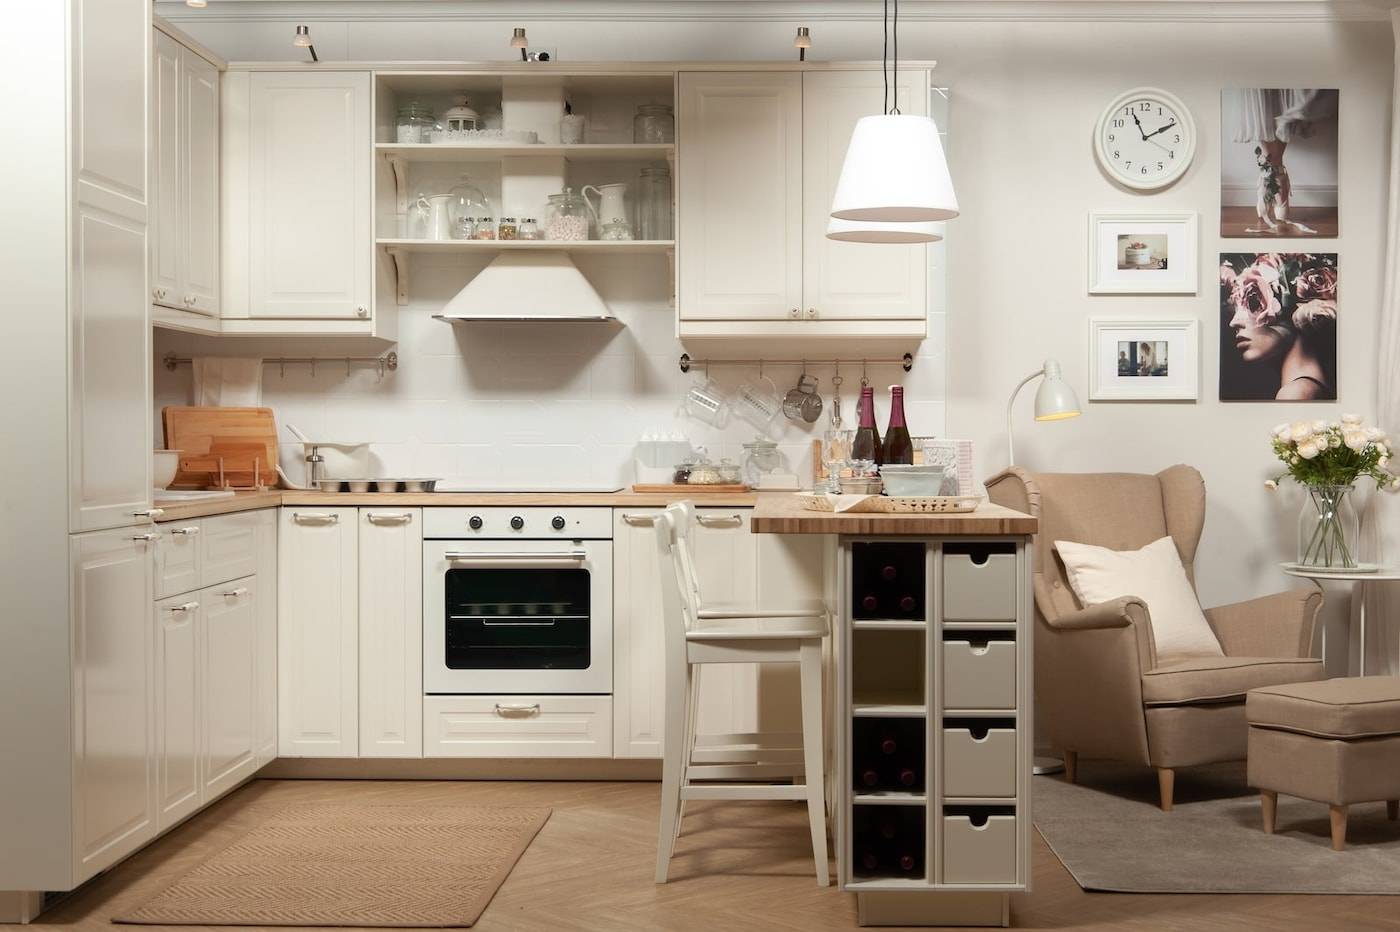 Икеа кухонная мебель для маленькой кухни. 85 фото вариантов кухонь ikea